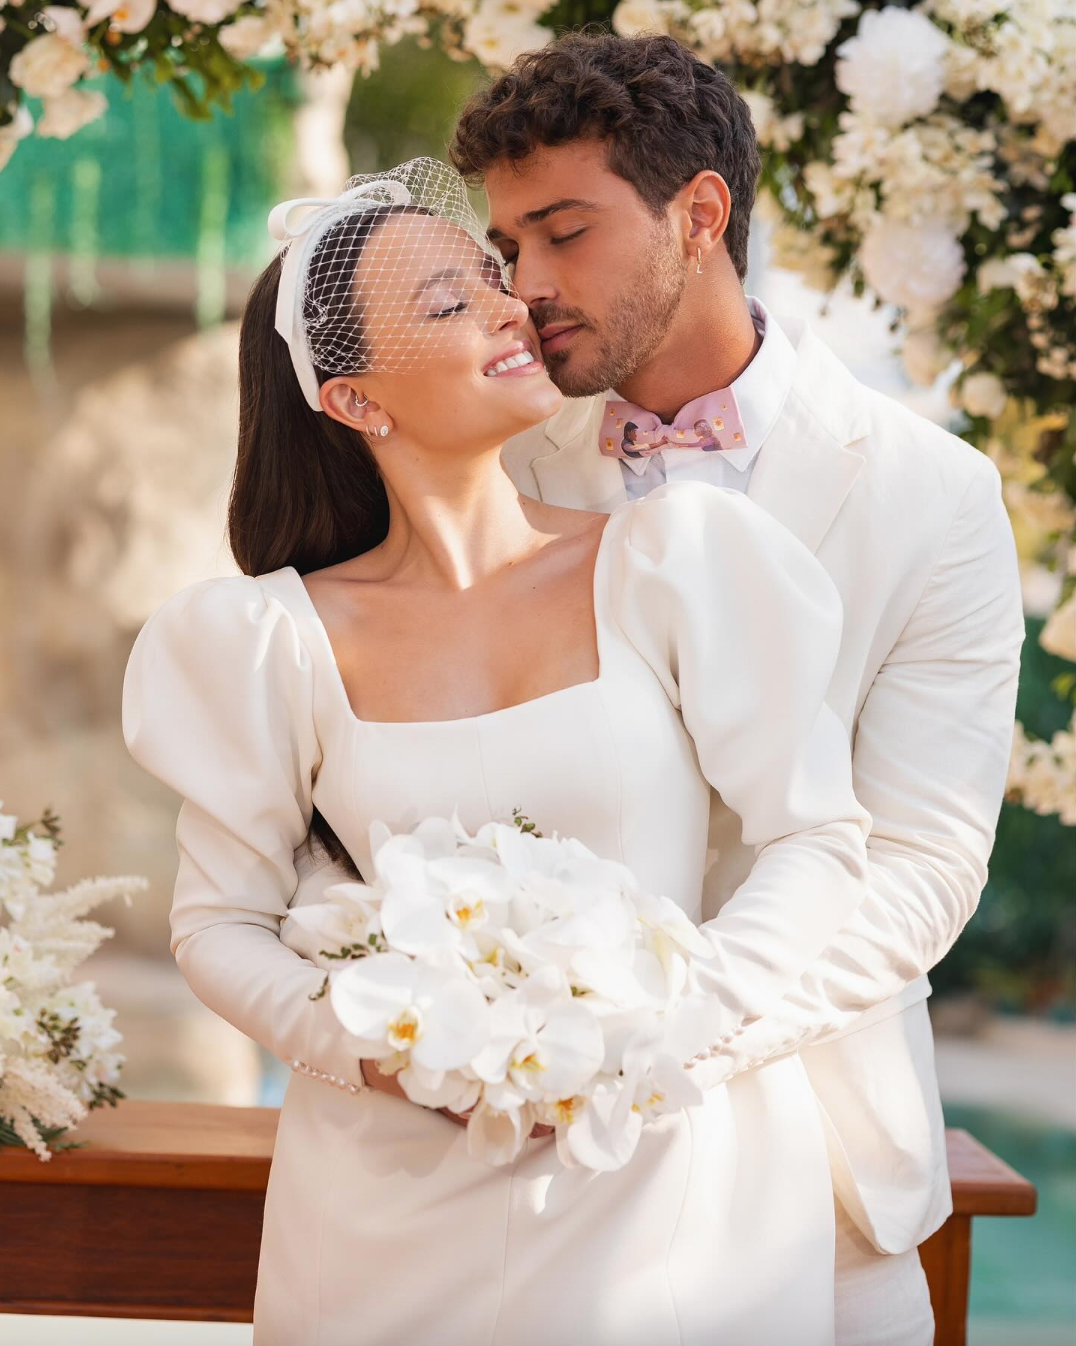 Casamento de Larissa Manoela e André Luiz Frambach